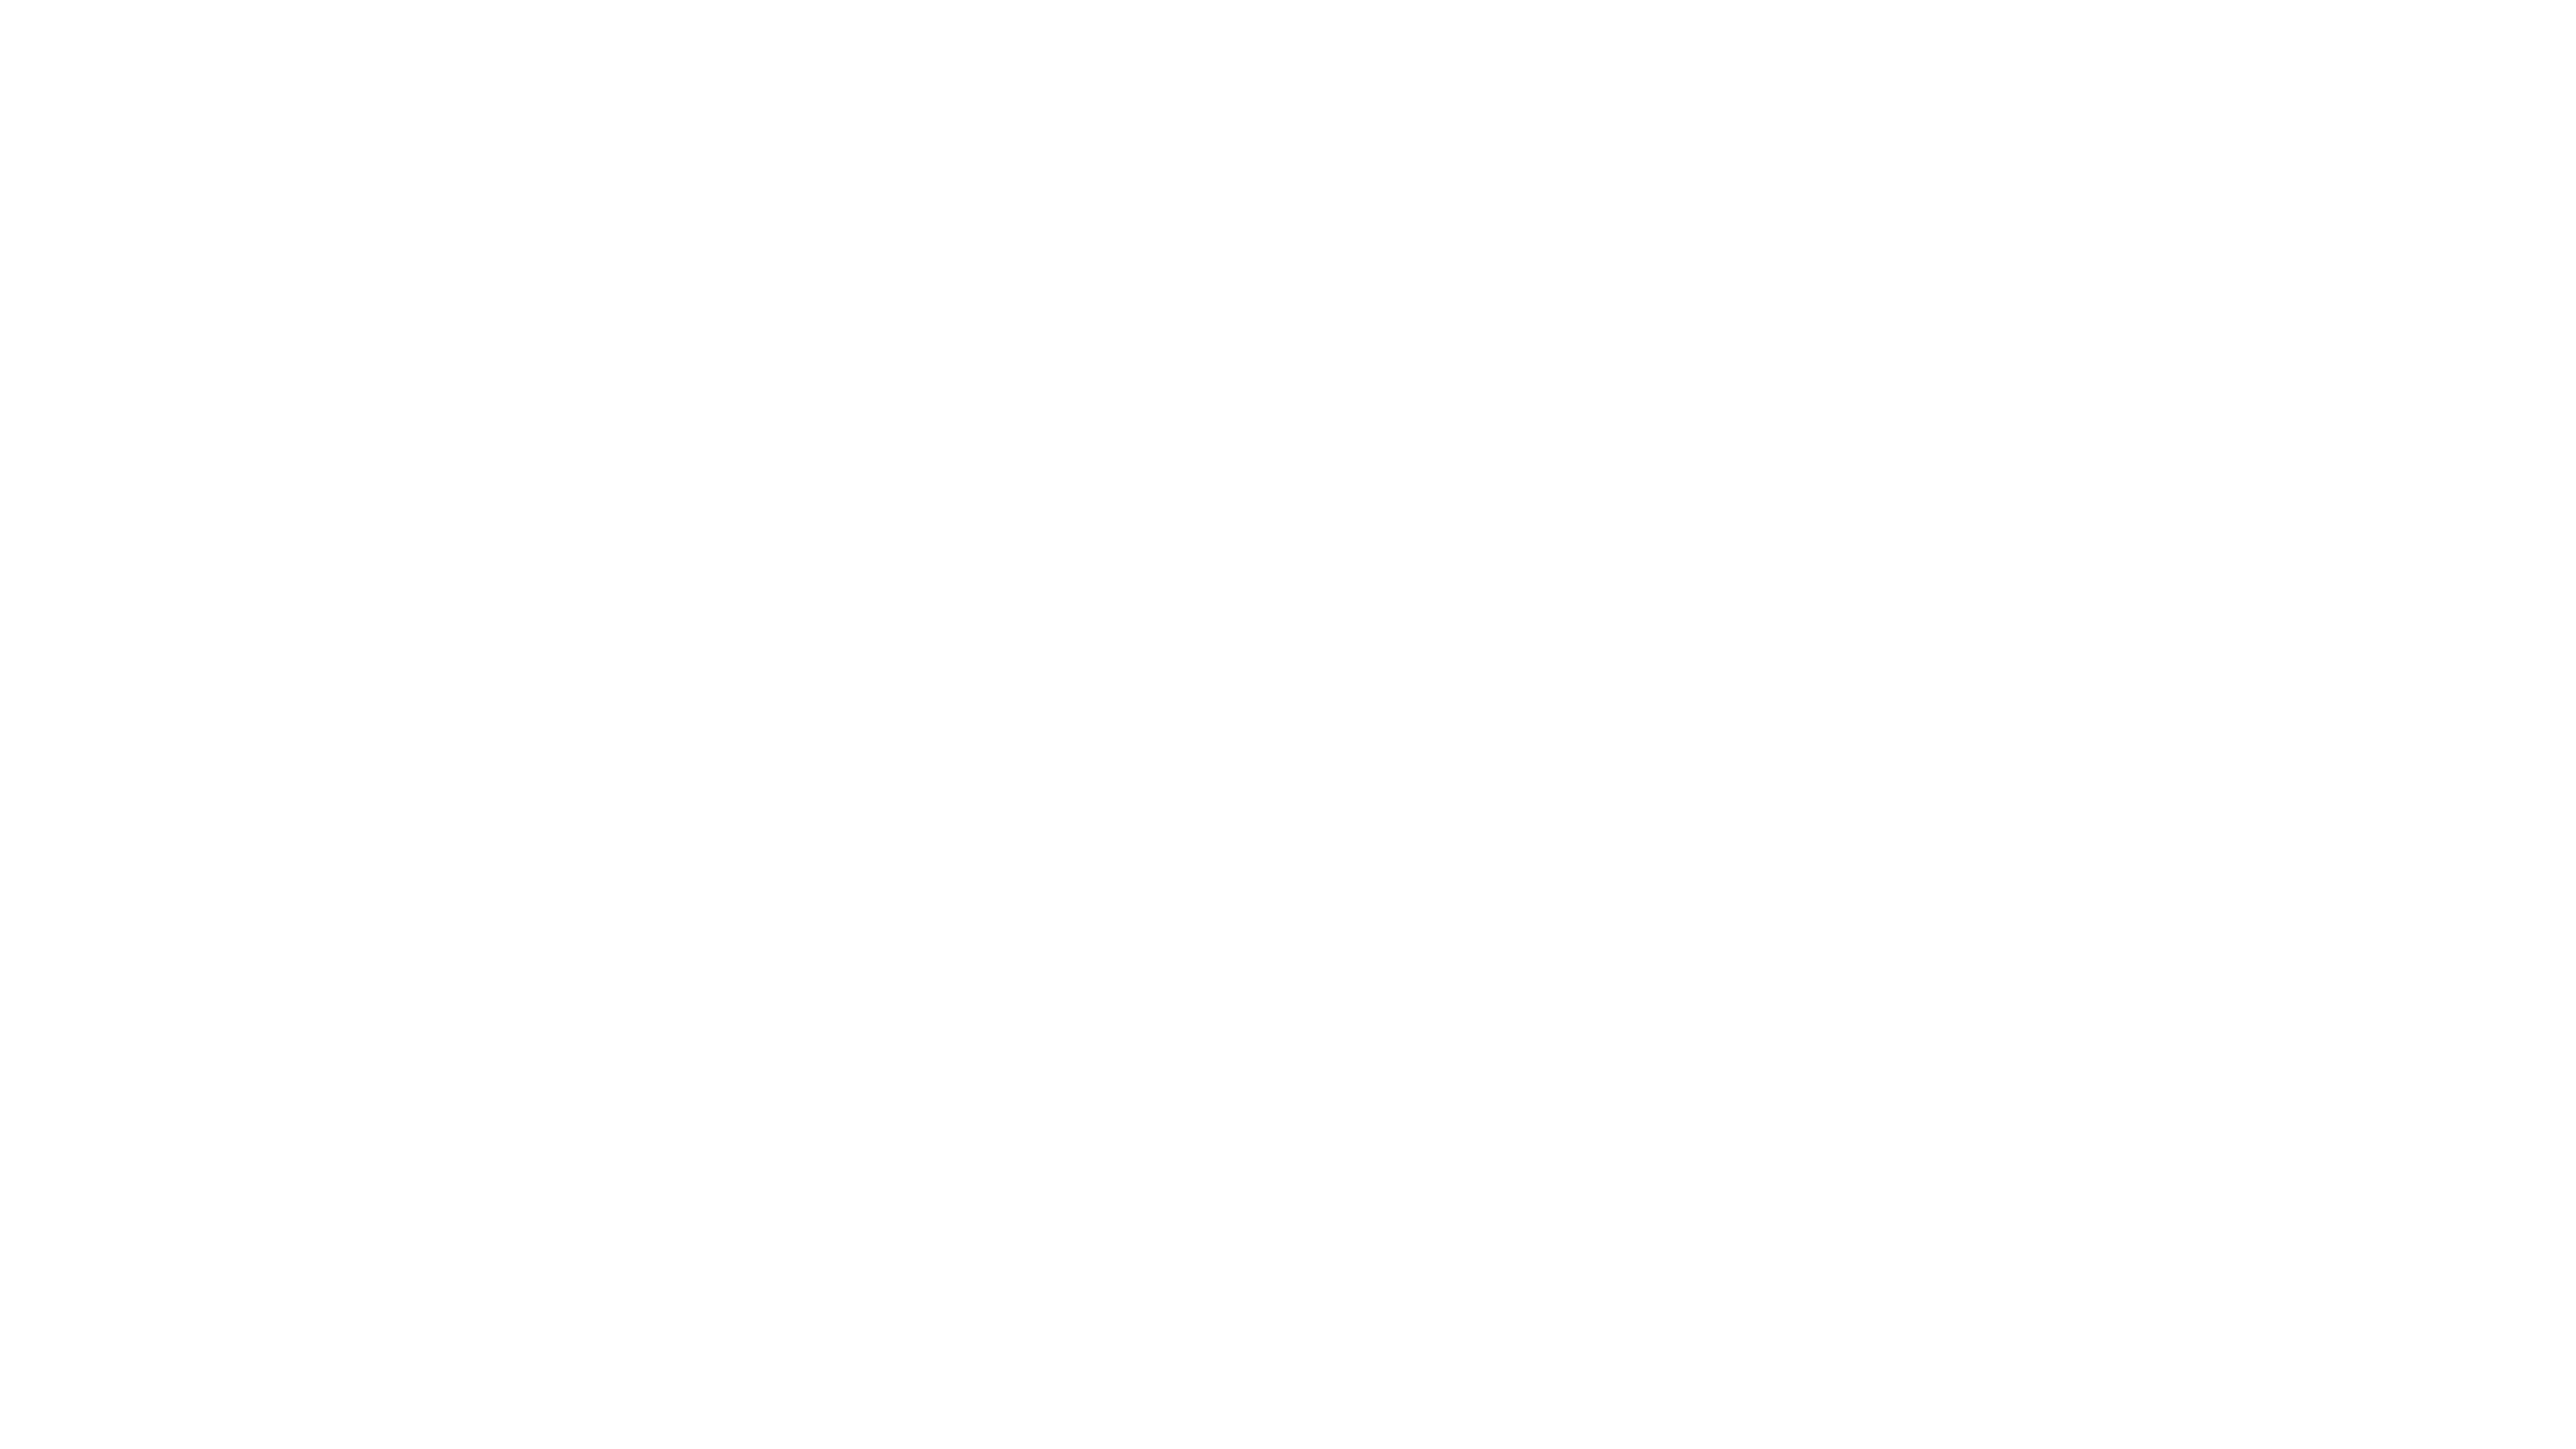 Brown Heating, Cooling & Plumbing logo